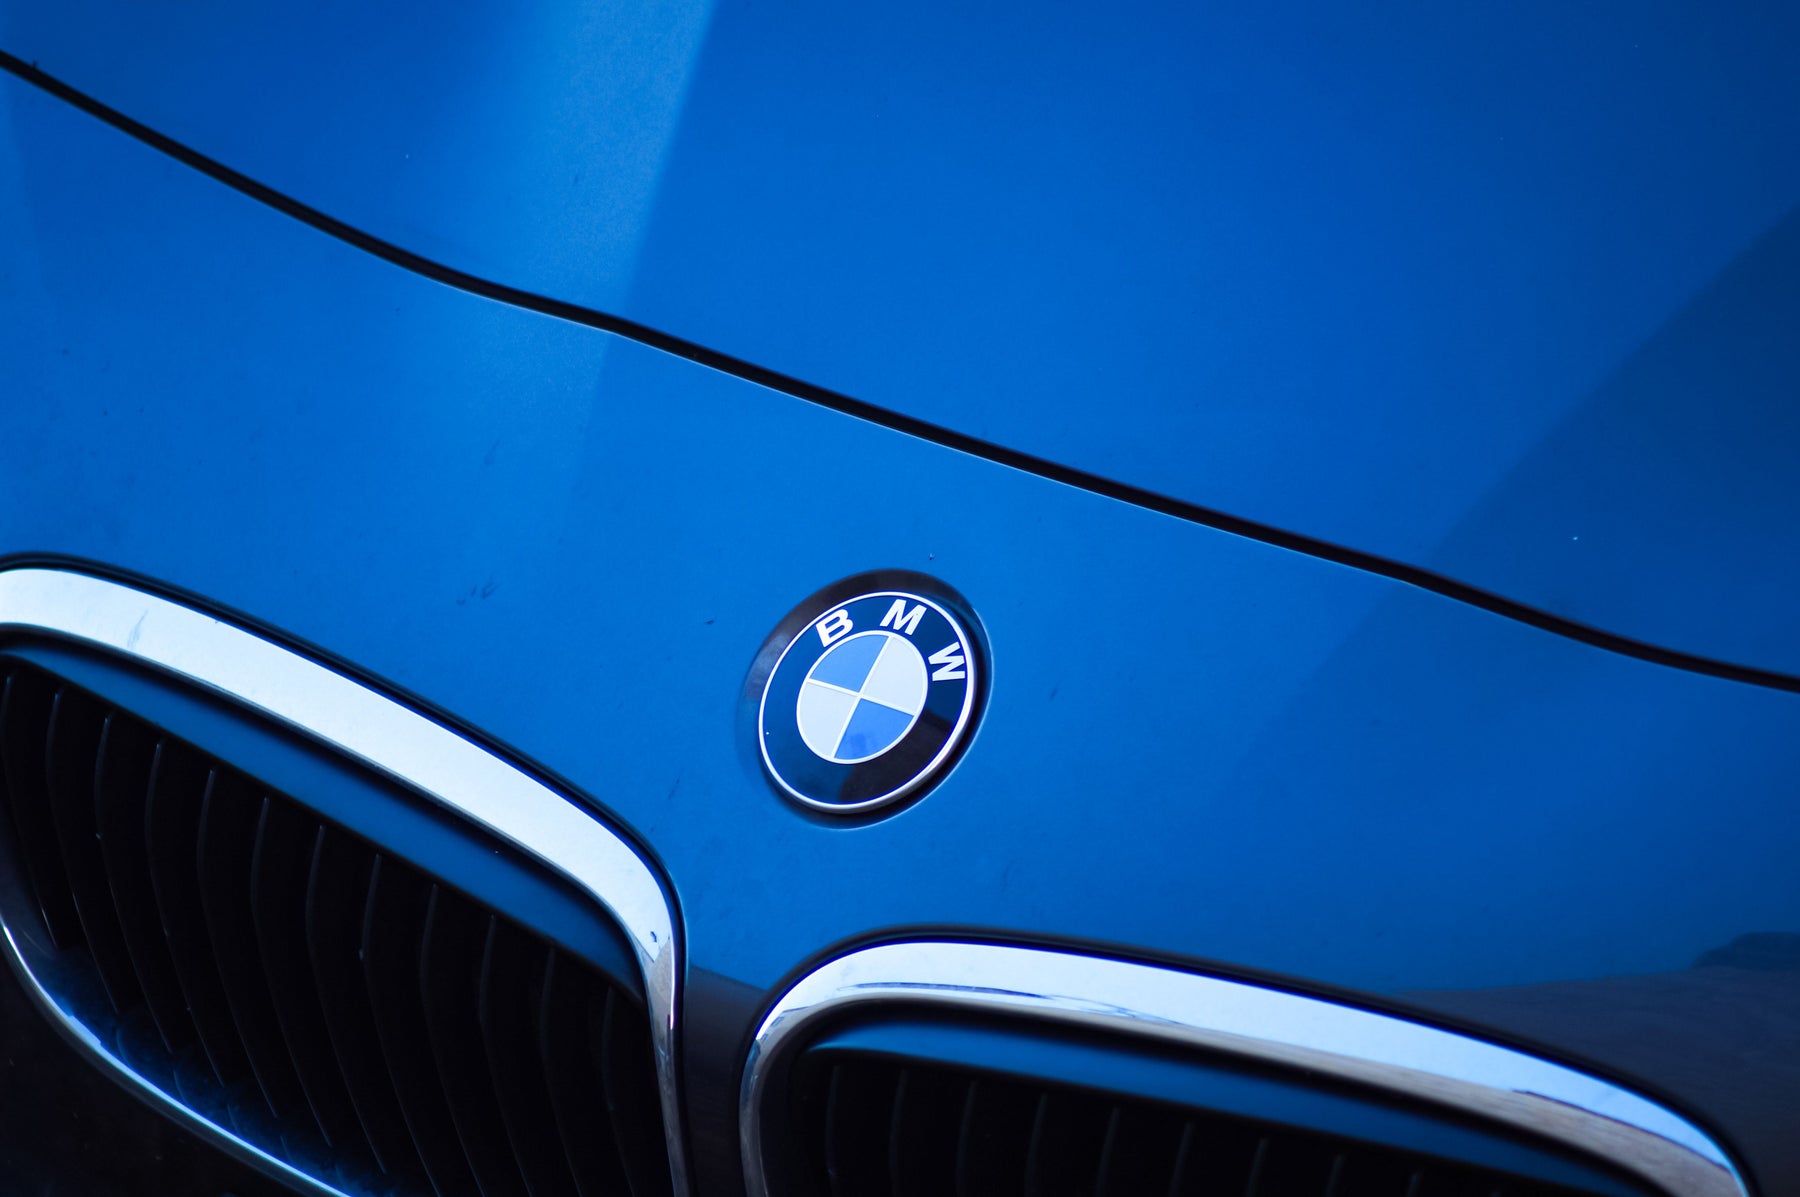 Image of BMW hood with logo